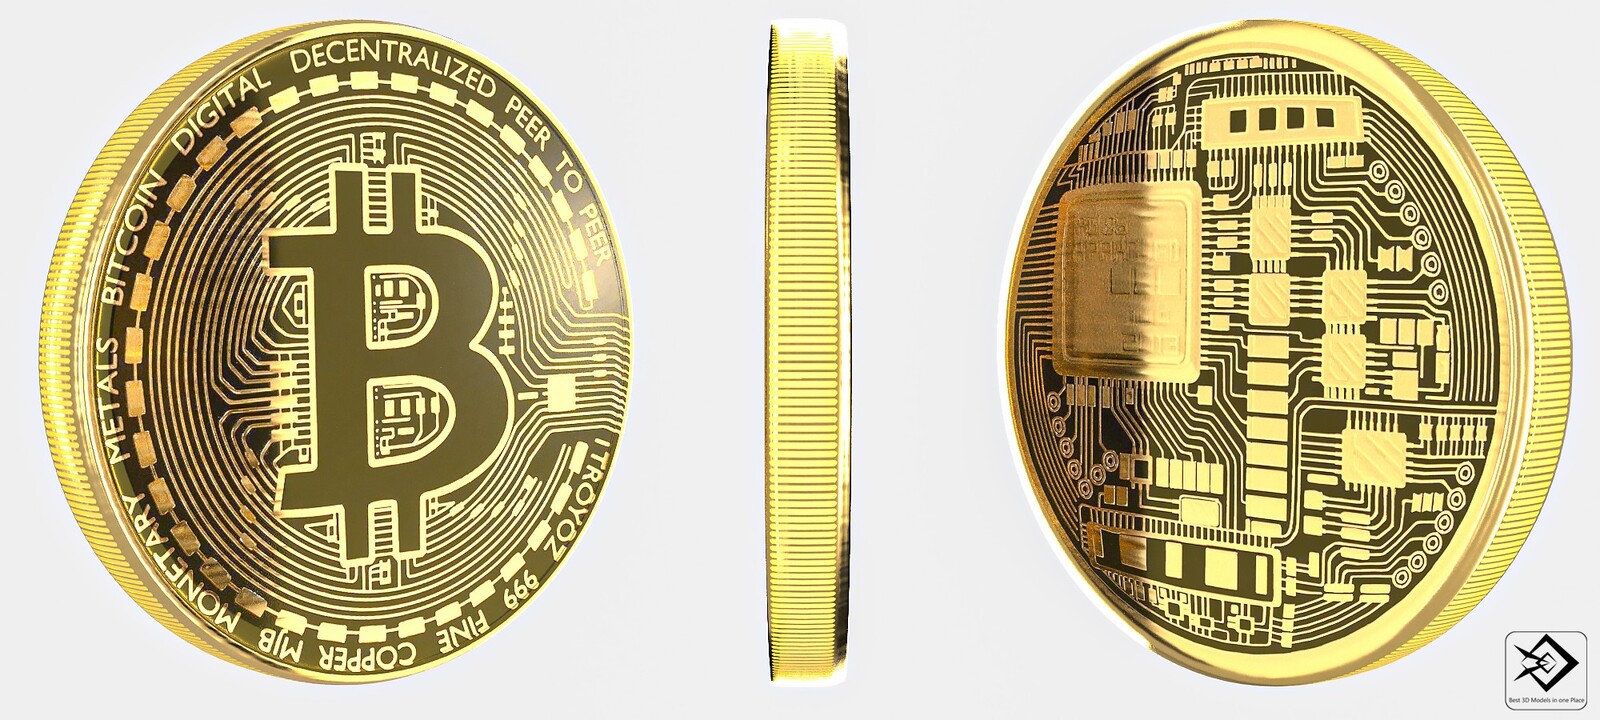 huisartsen laten zich betalen met bitcoins for free